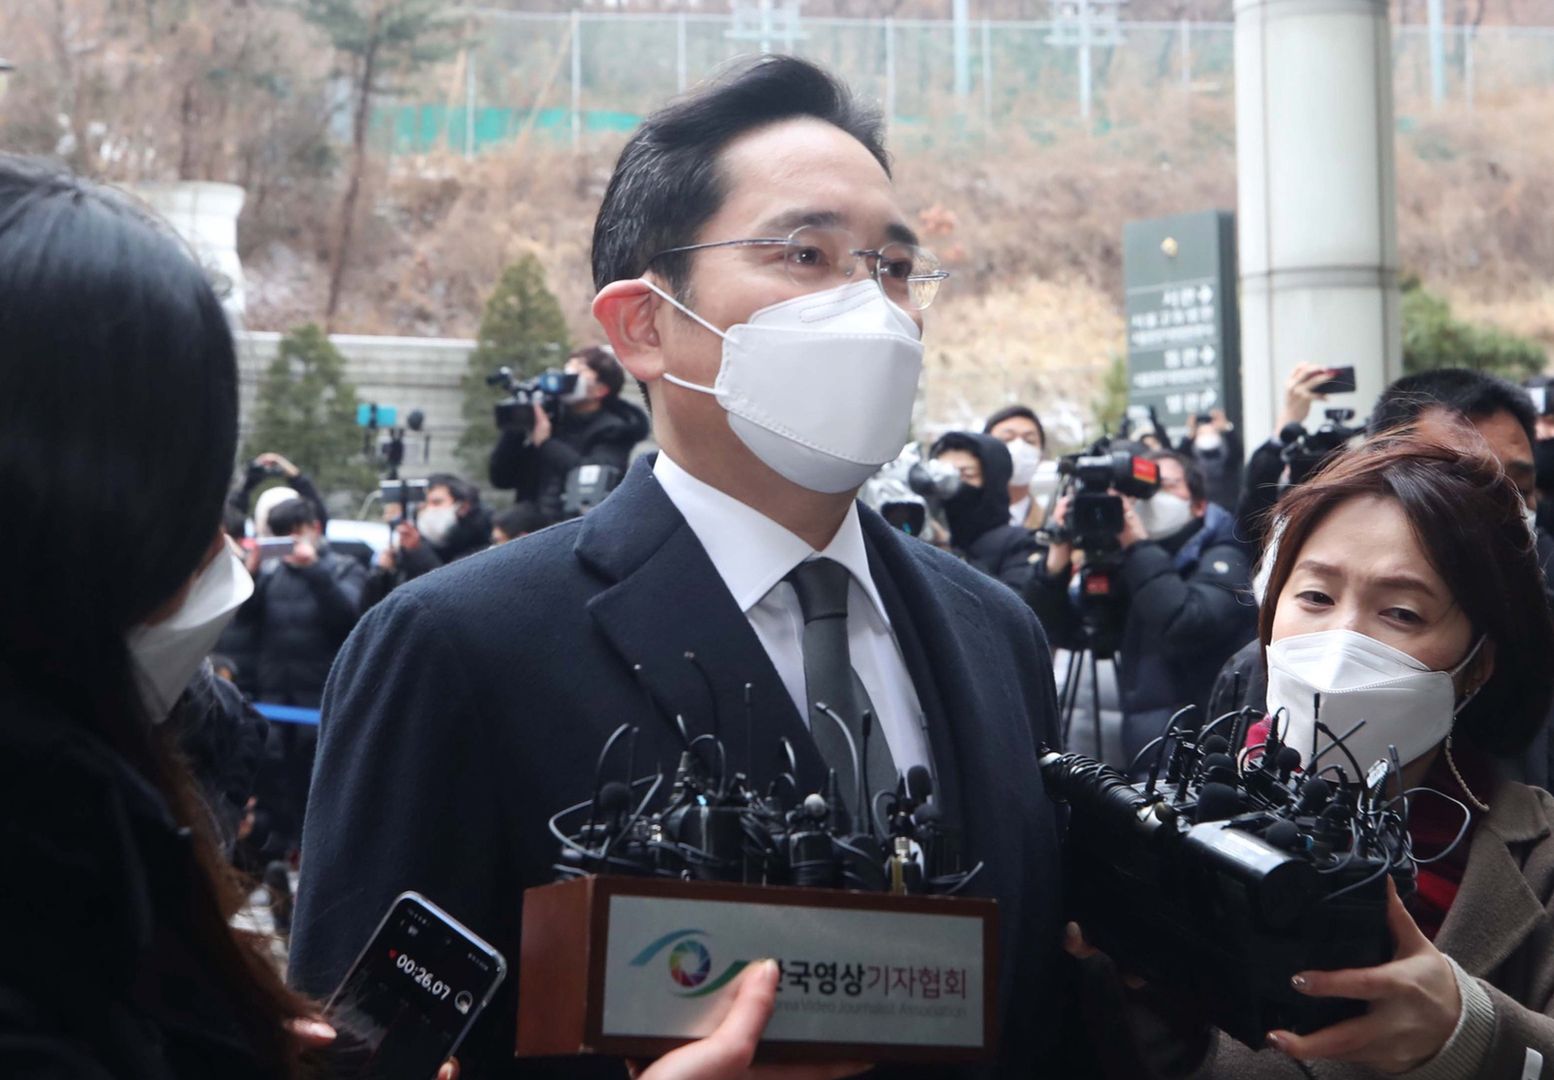 Wiceprezes Samsunga za kratami! 2,5 roku więzienia